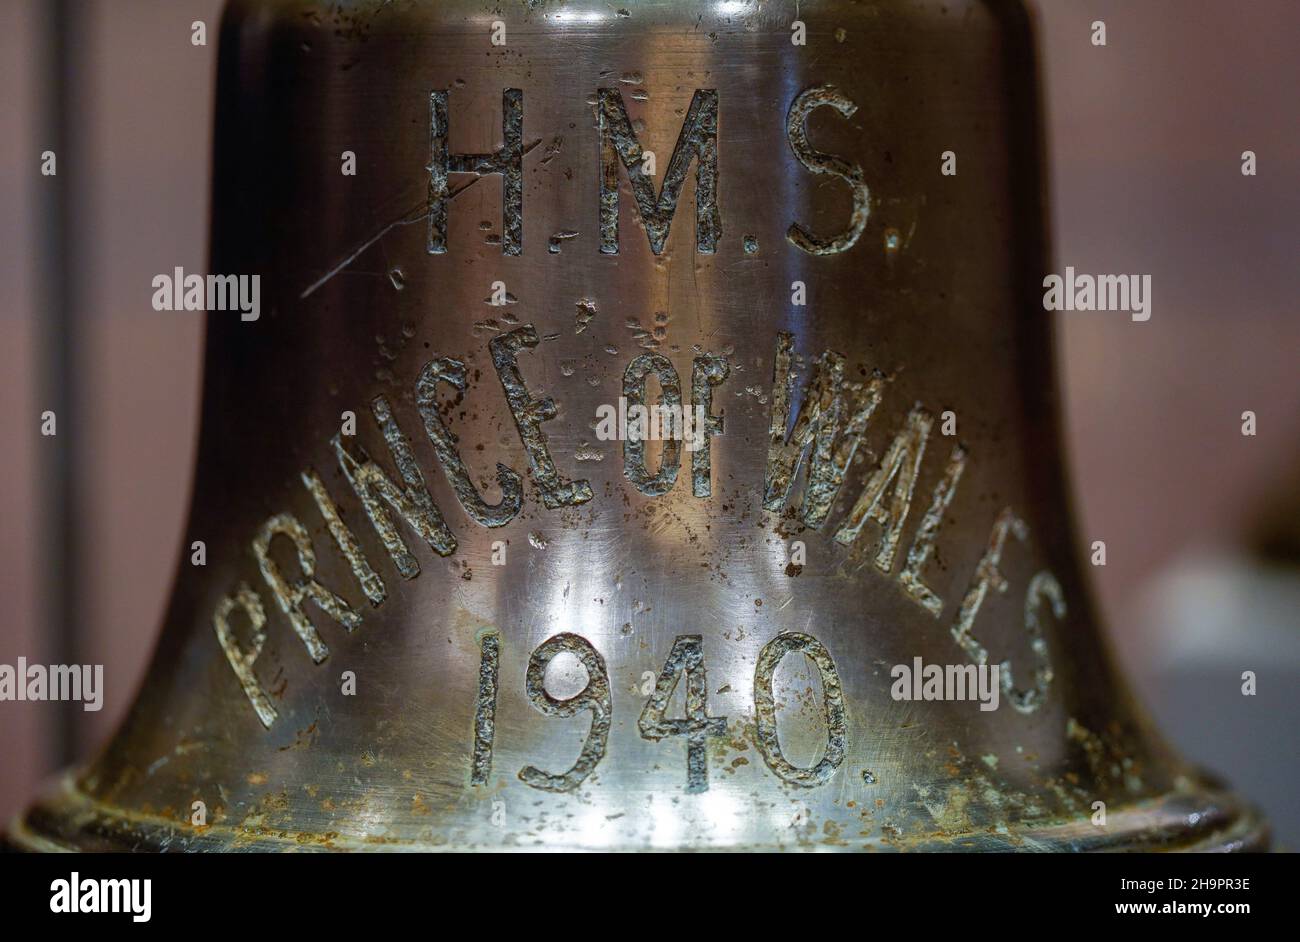 La cloche du navire du HMS Prince de Galles qui a été coulé avec le HMS Repulse après une attaque aérienne japonaise le 10 1941 décembre.842 hommes ont perdu la vie dans ce qui est l'une des pires catastrophes de l'histoire navale britannique.Date de la photo: Mercredi 8 décembre 2021. Banque D'Images